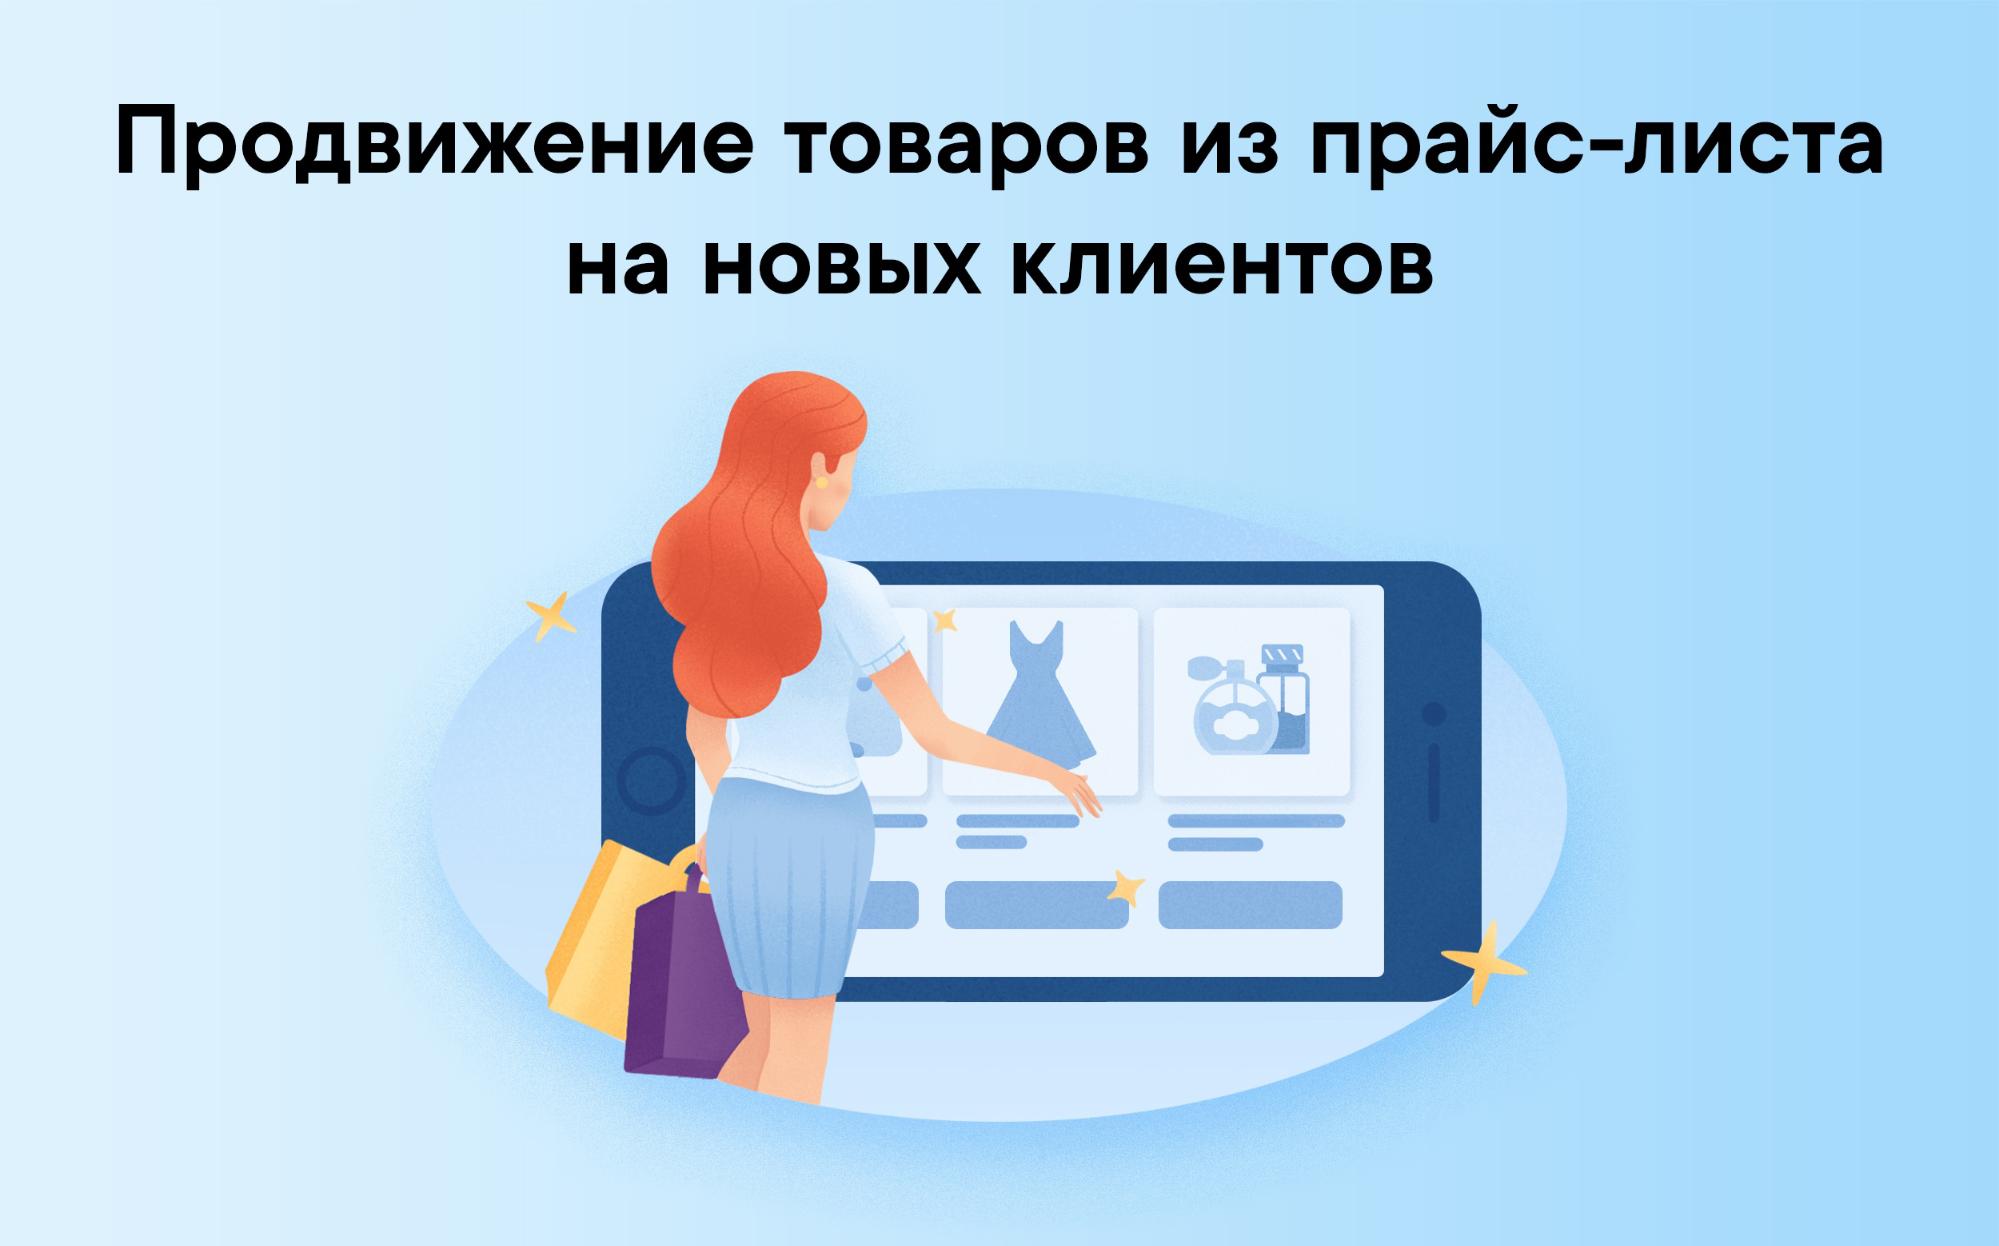 Продвижение товаров из прайс-листа на новых клиентов ВКонтакте